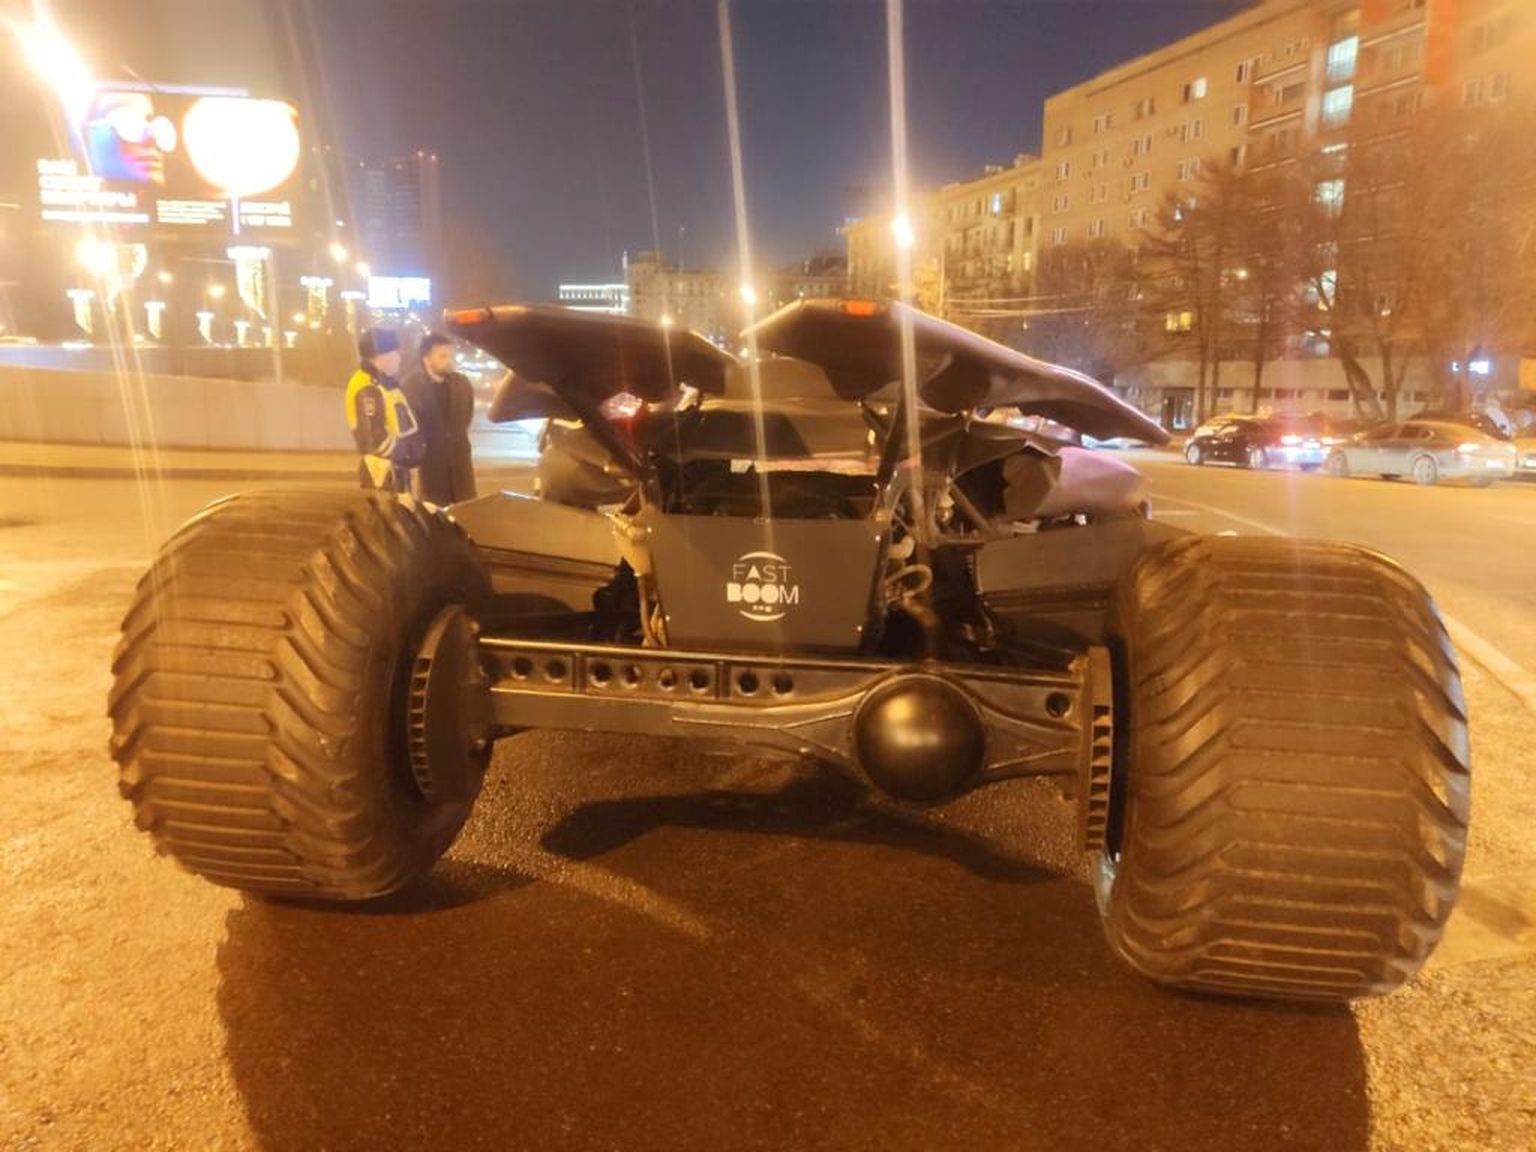 Полицейские задержали на западе Москвы копию "бэтмобиля" из фильма "Бэтмен против Супермена", вышедшего в прокат в 2016 году, за большие габариты и отсутствие регистрации.